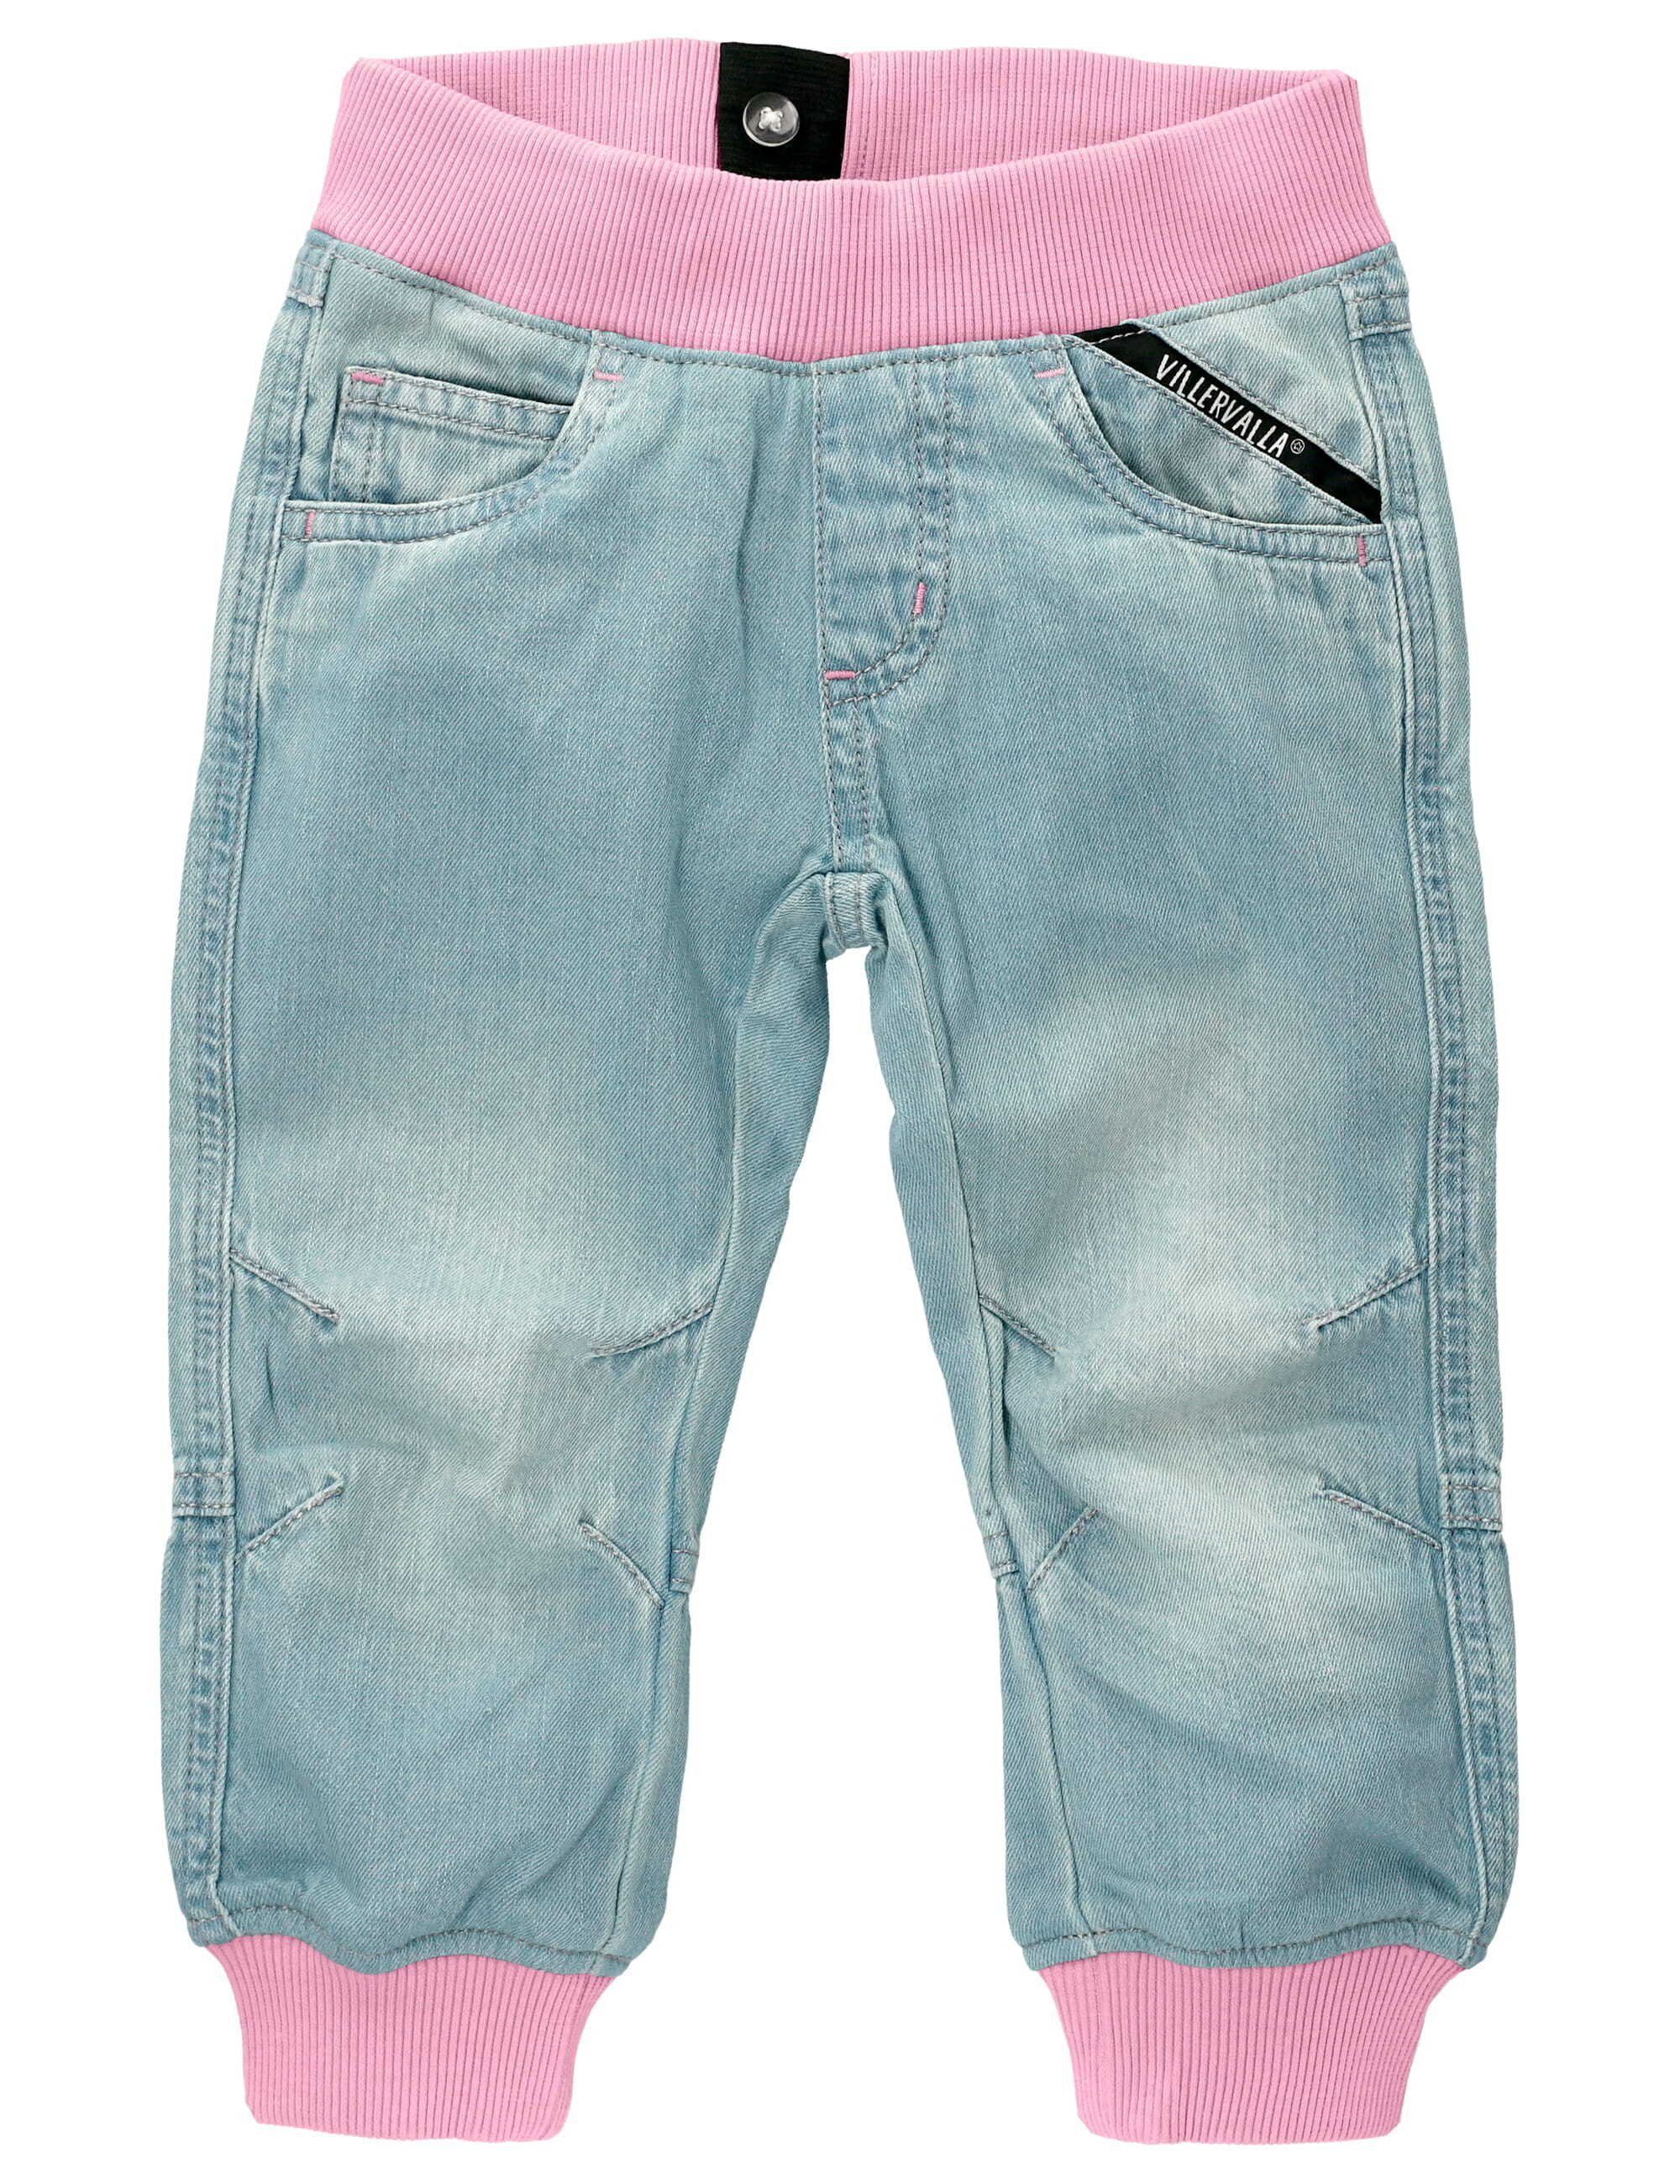 Villervalla Dehnbund-Jeans Jeans blau rosa